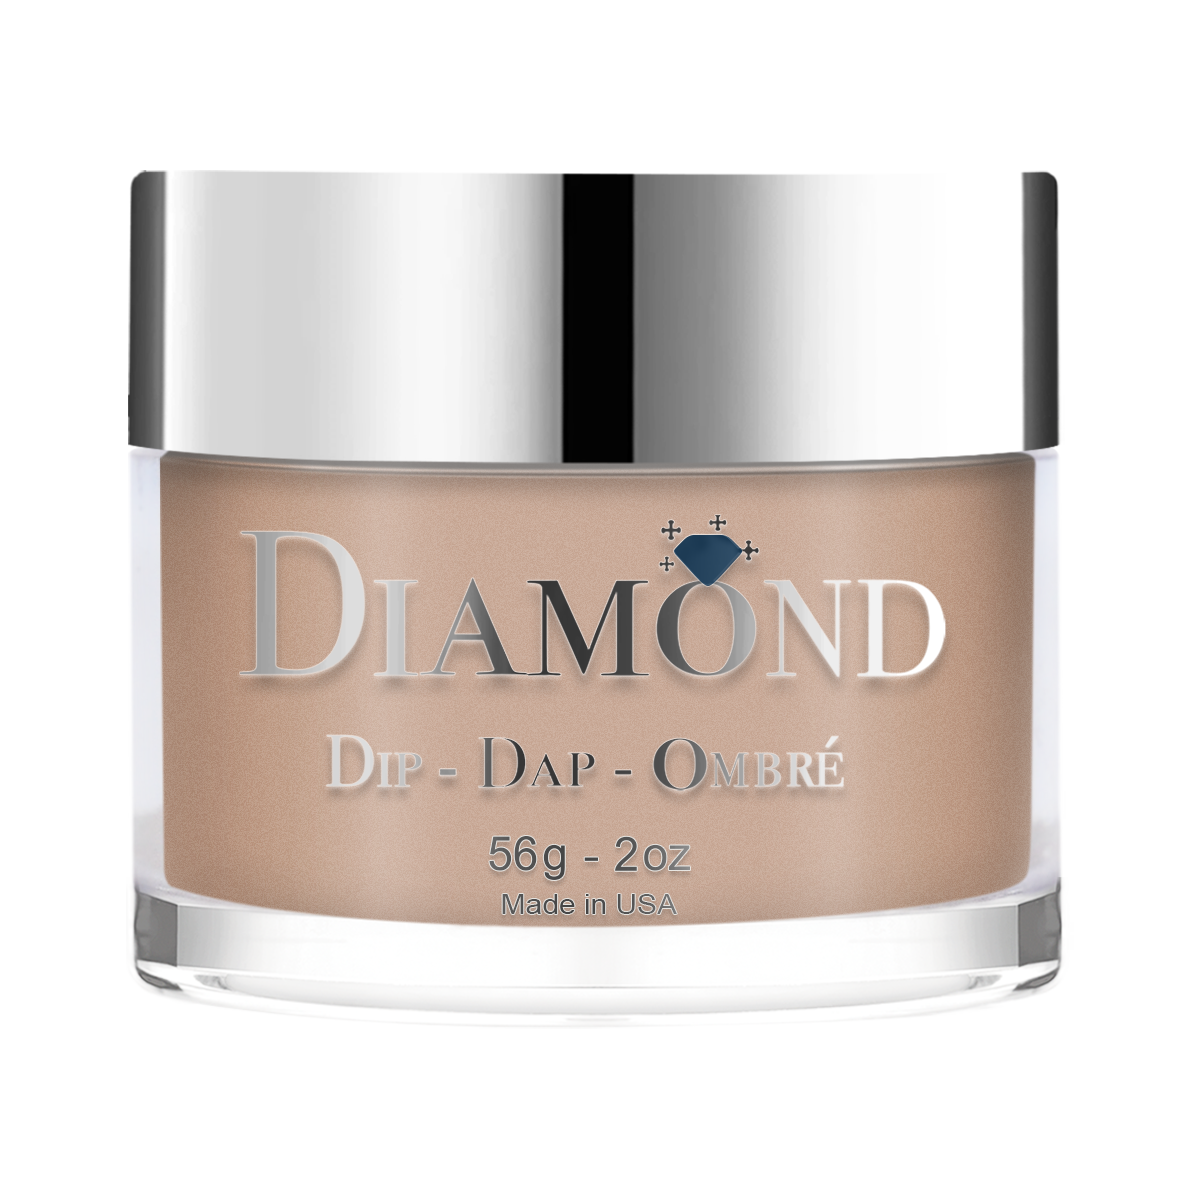 Diamond Dip & Dap Ombre Powder - 020